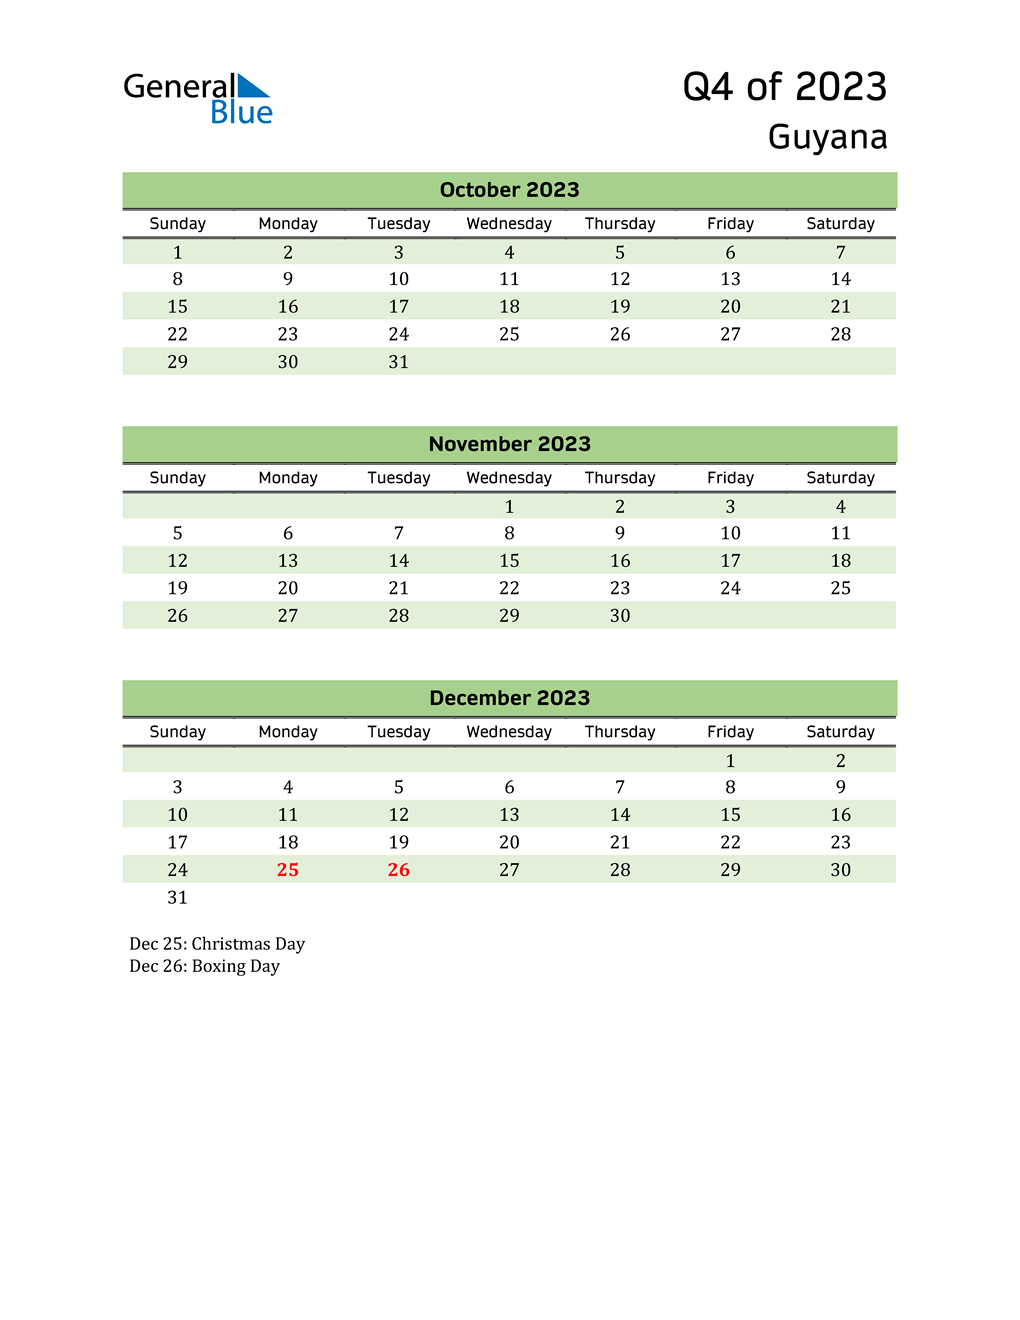 Q4 2023 Quarterly Calendar for Guyana